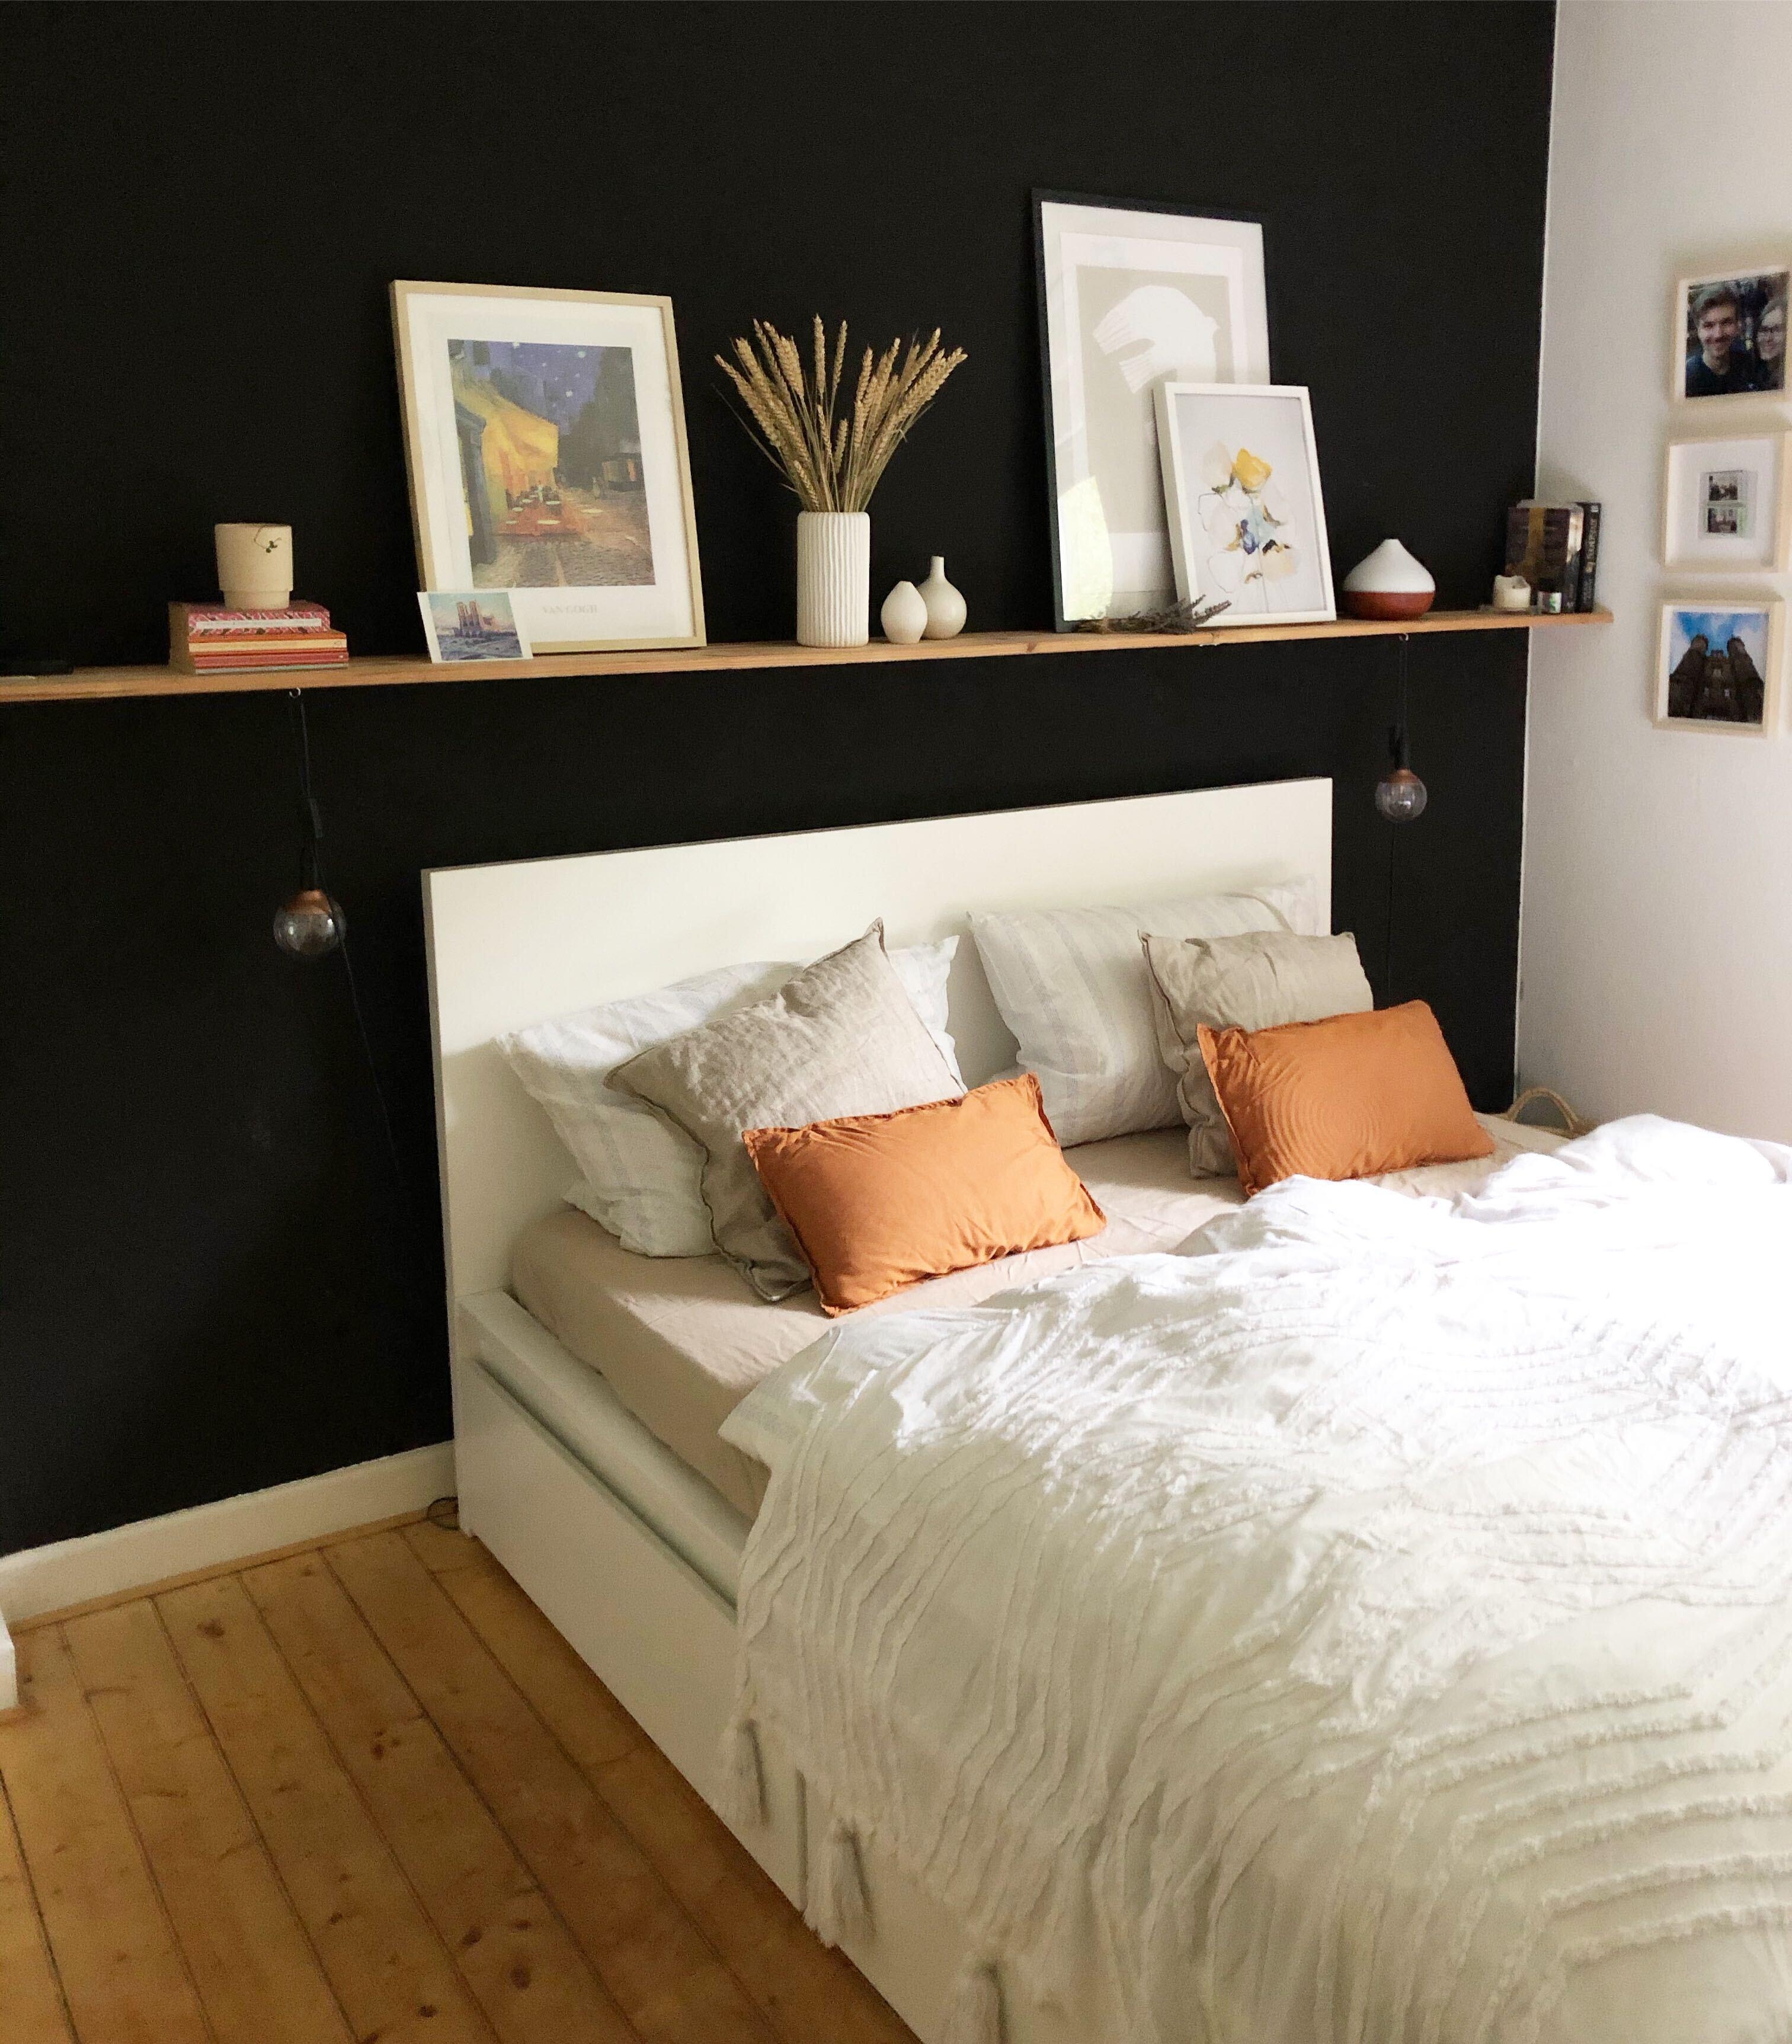 #bedroom #bedroomview #schlafzimmer #schwarzewandfarbe #darkwall